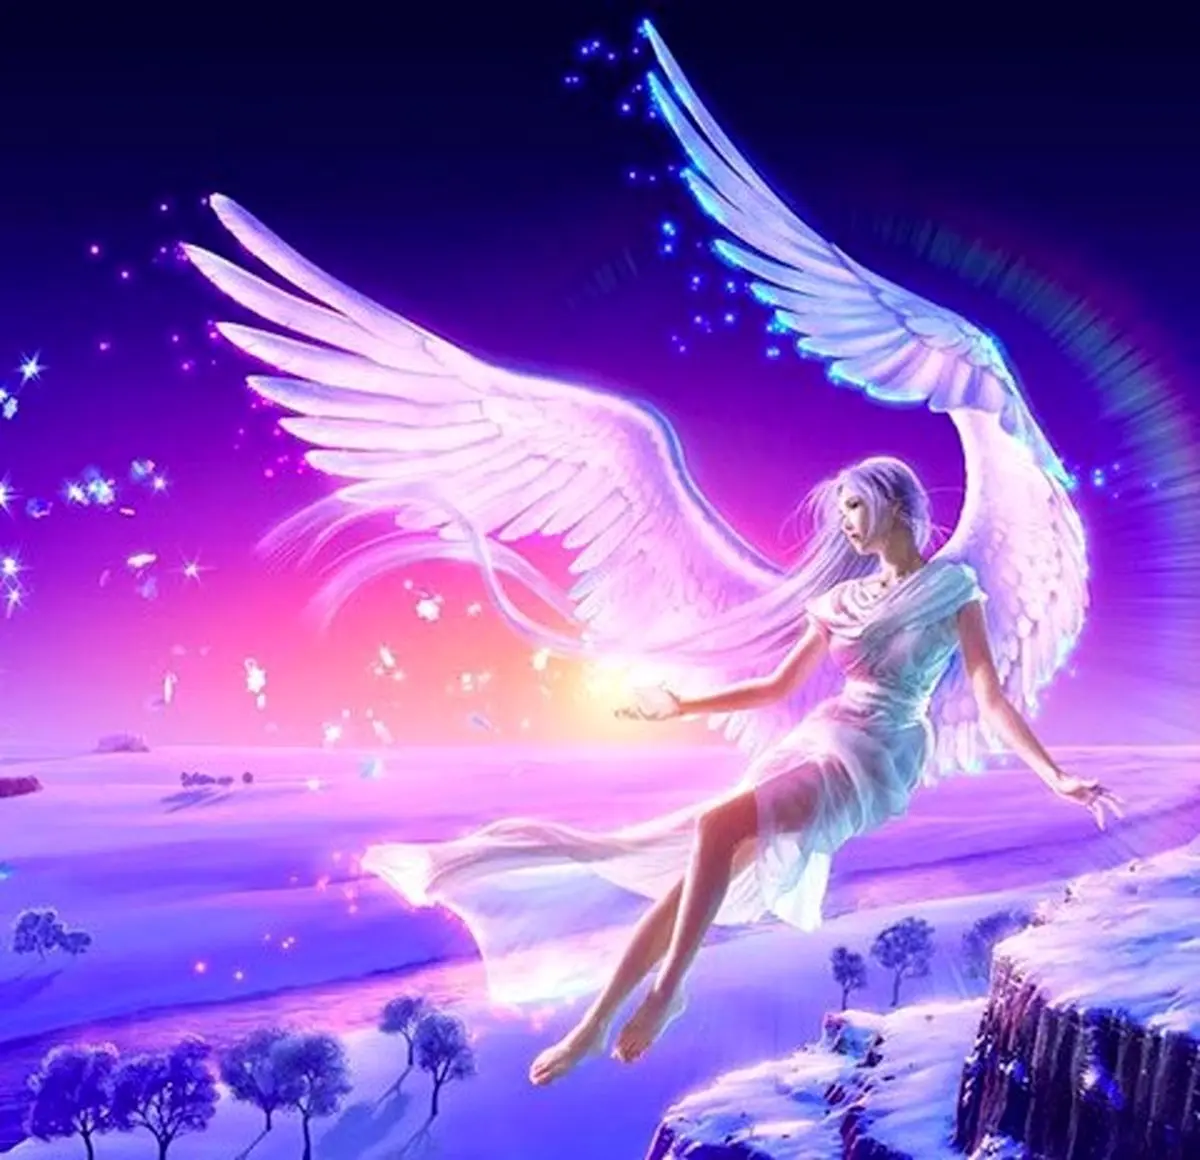 فال فرشتگان 9 آبان ماه | فرشتگان برای شما چه پیام مثبتی دارند؟